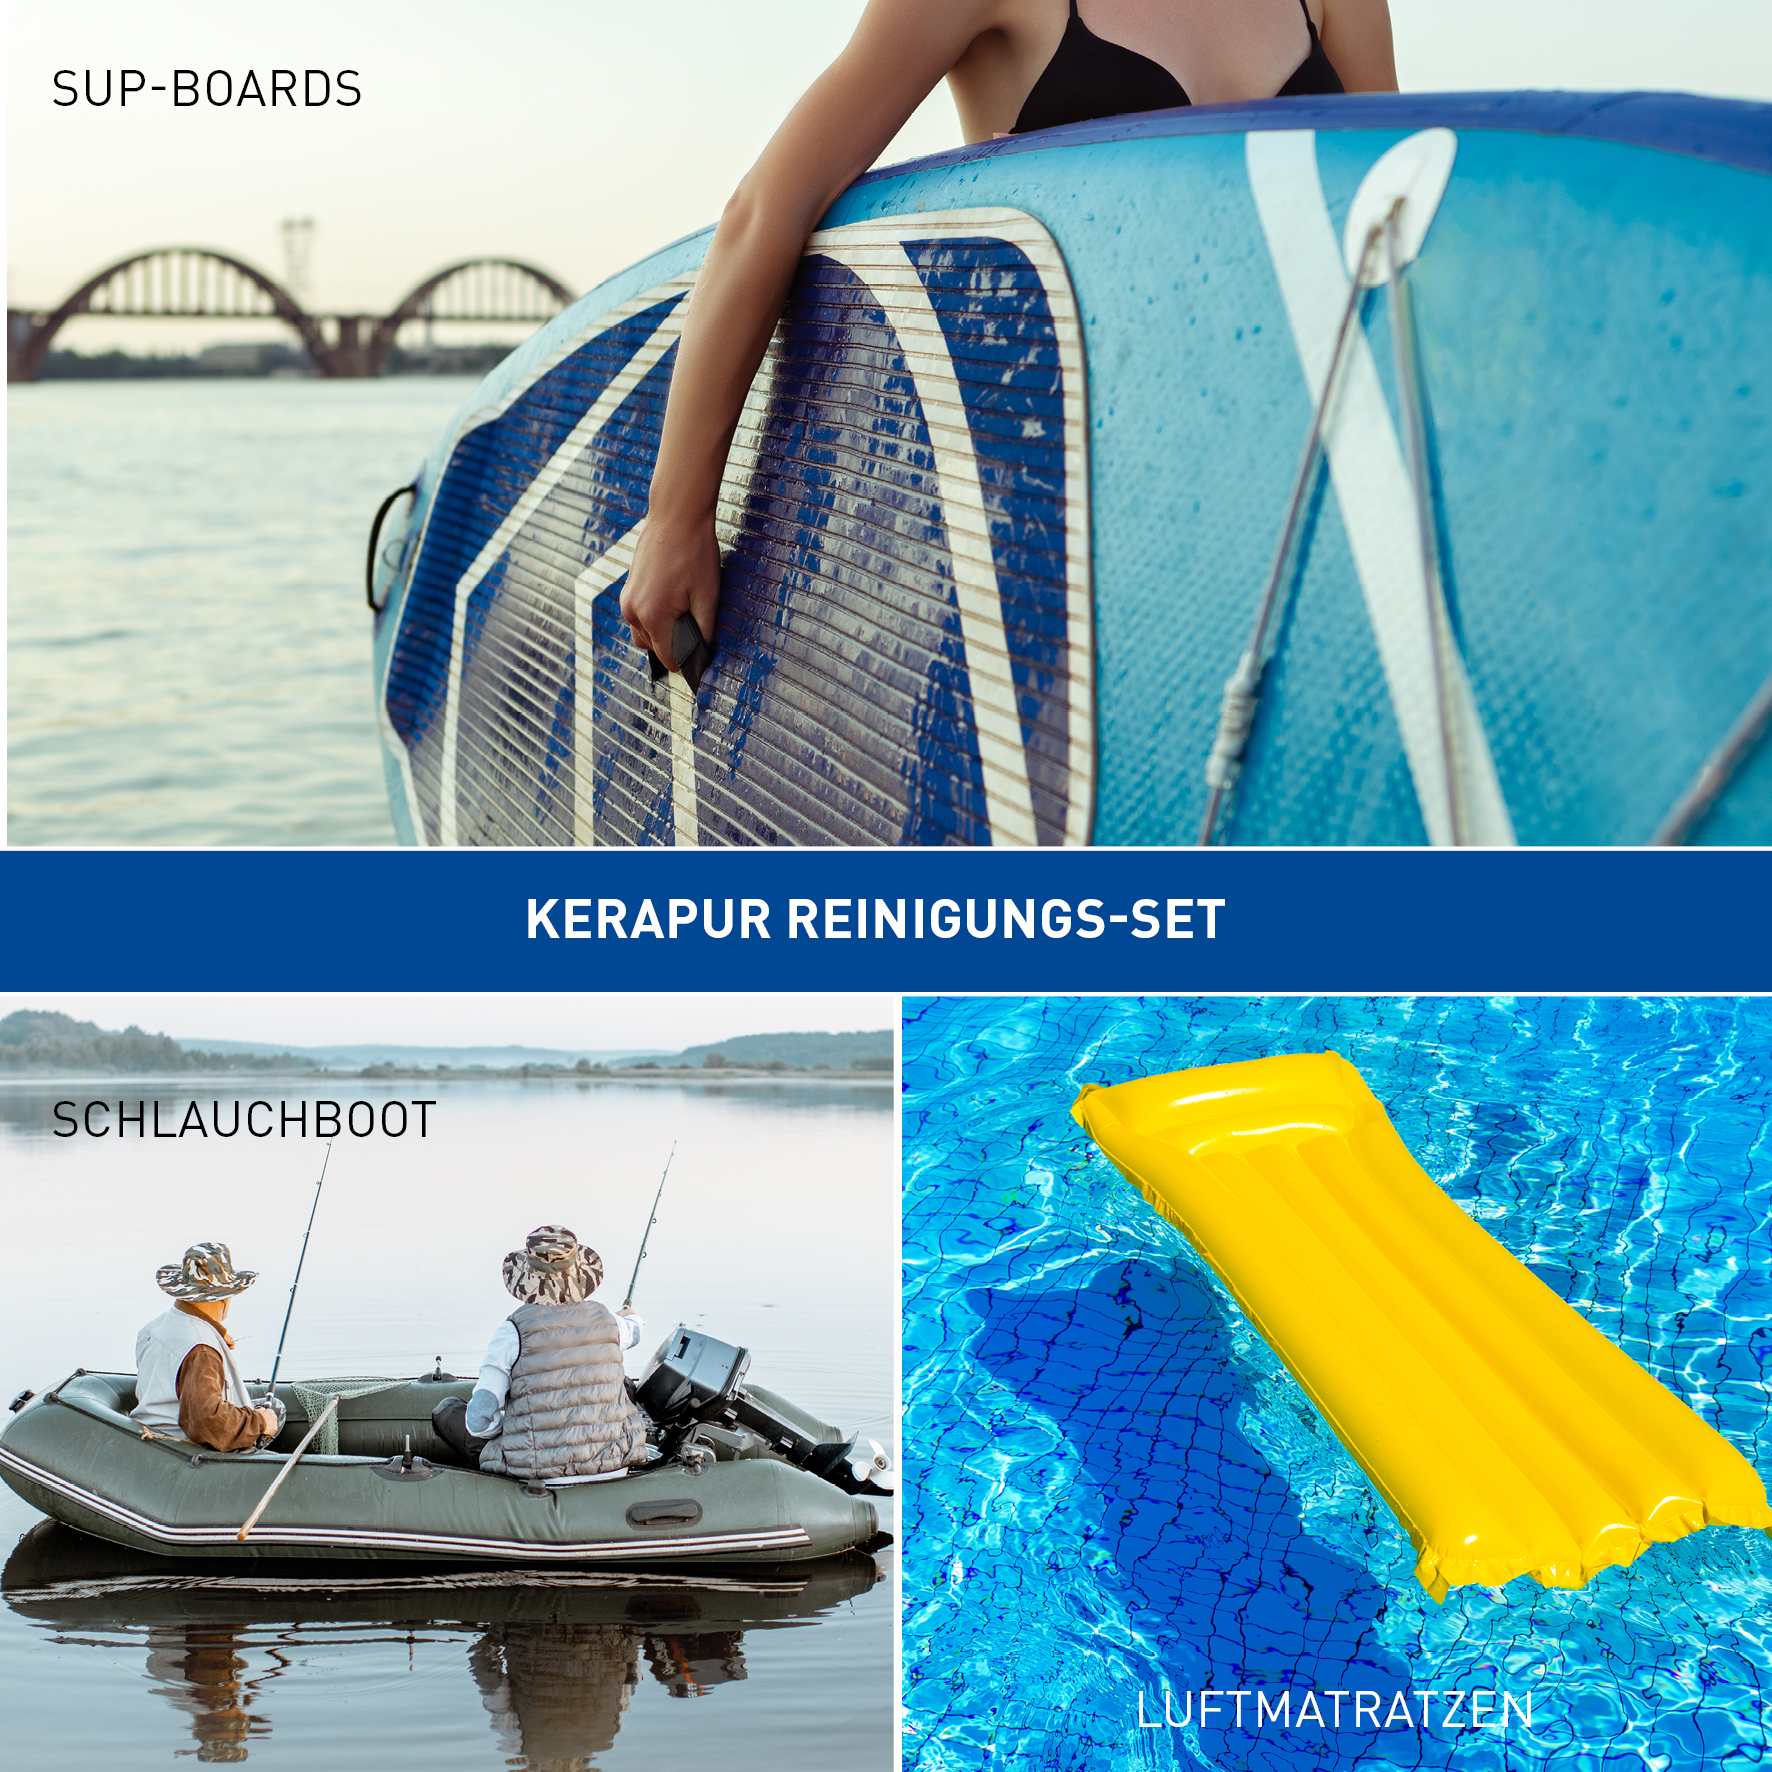 KERAPUR® Reinigungs-Set für SUP-Boards und Schlauchboote 2